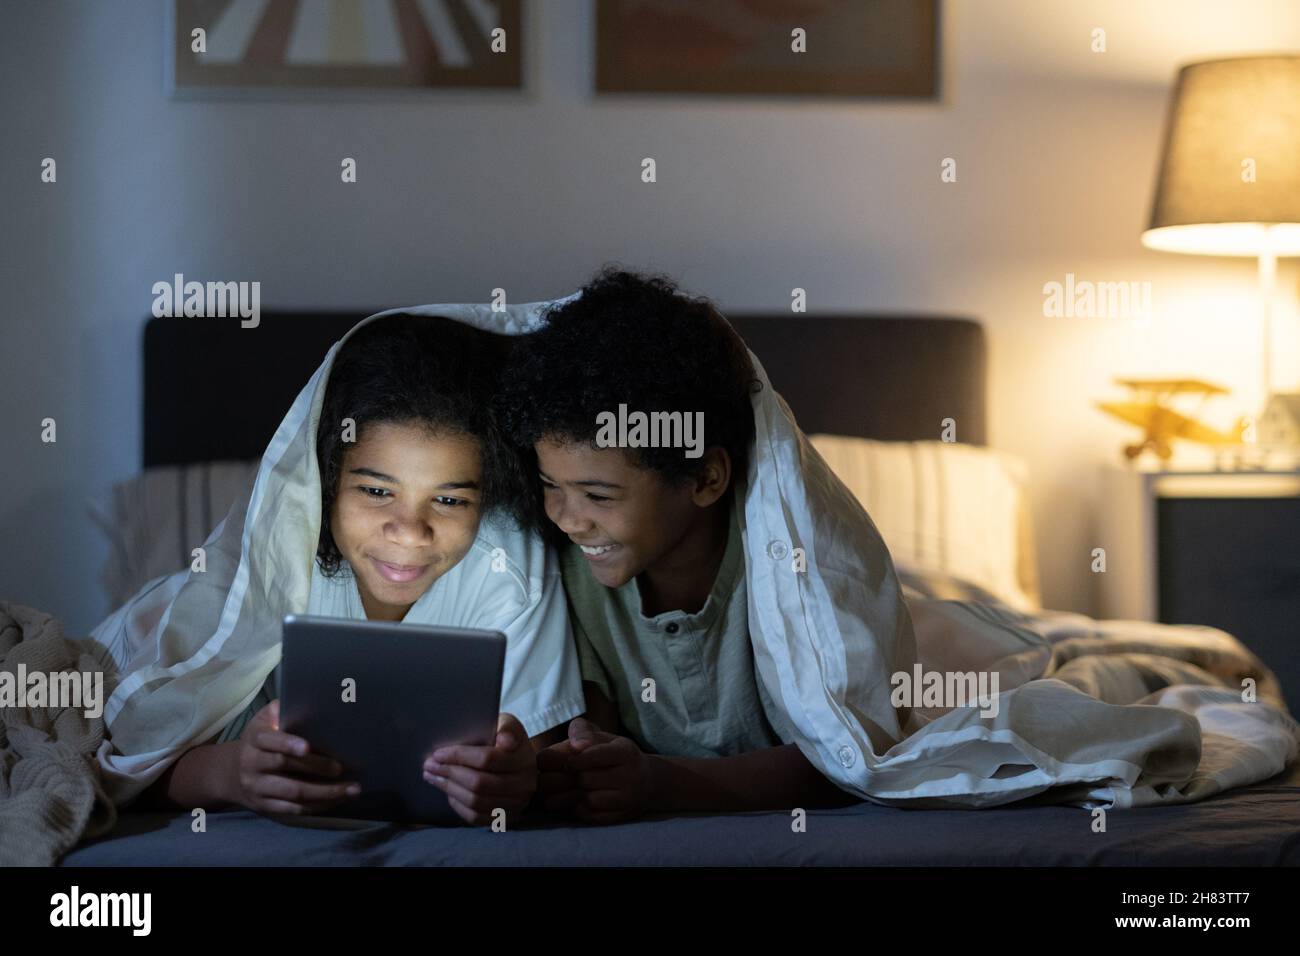 Frères et sœurs noirs positifs, couchés sous une couette sur le lit et utilisant une tablette tout en naviguant sur Internet la nuit Banque D'Images